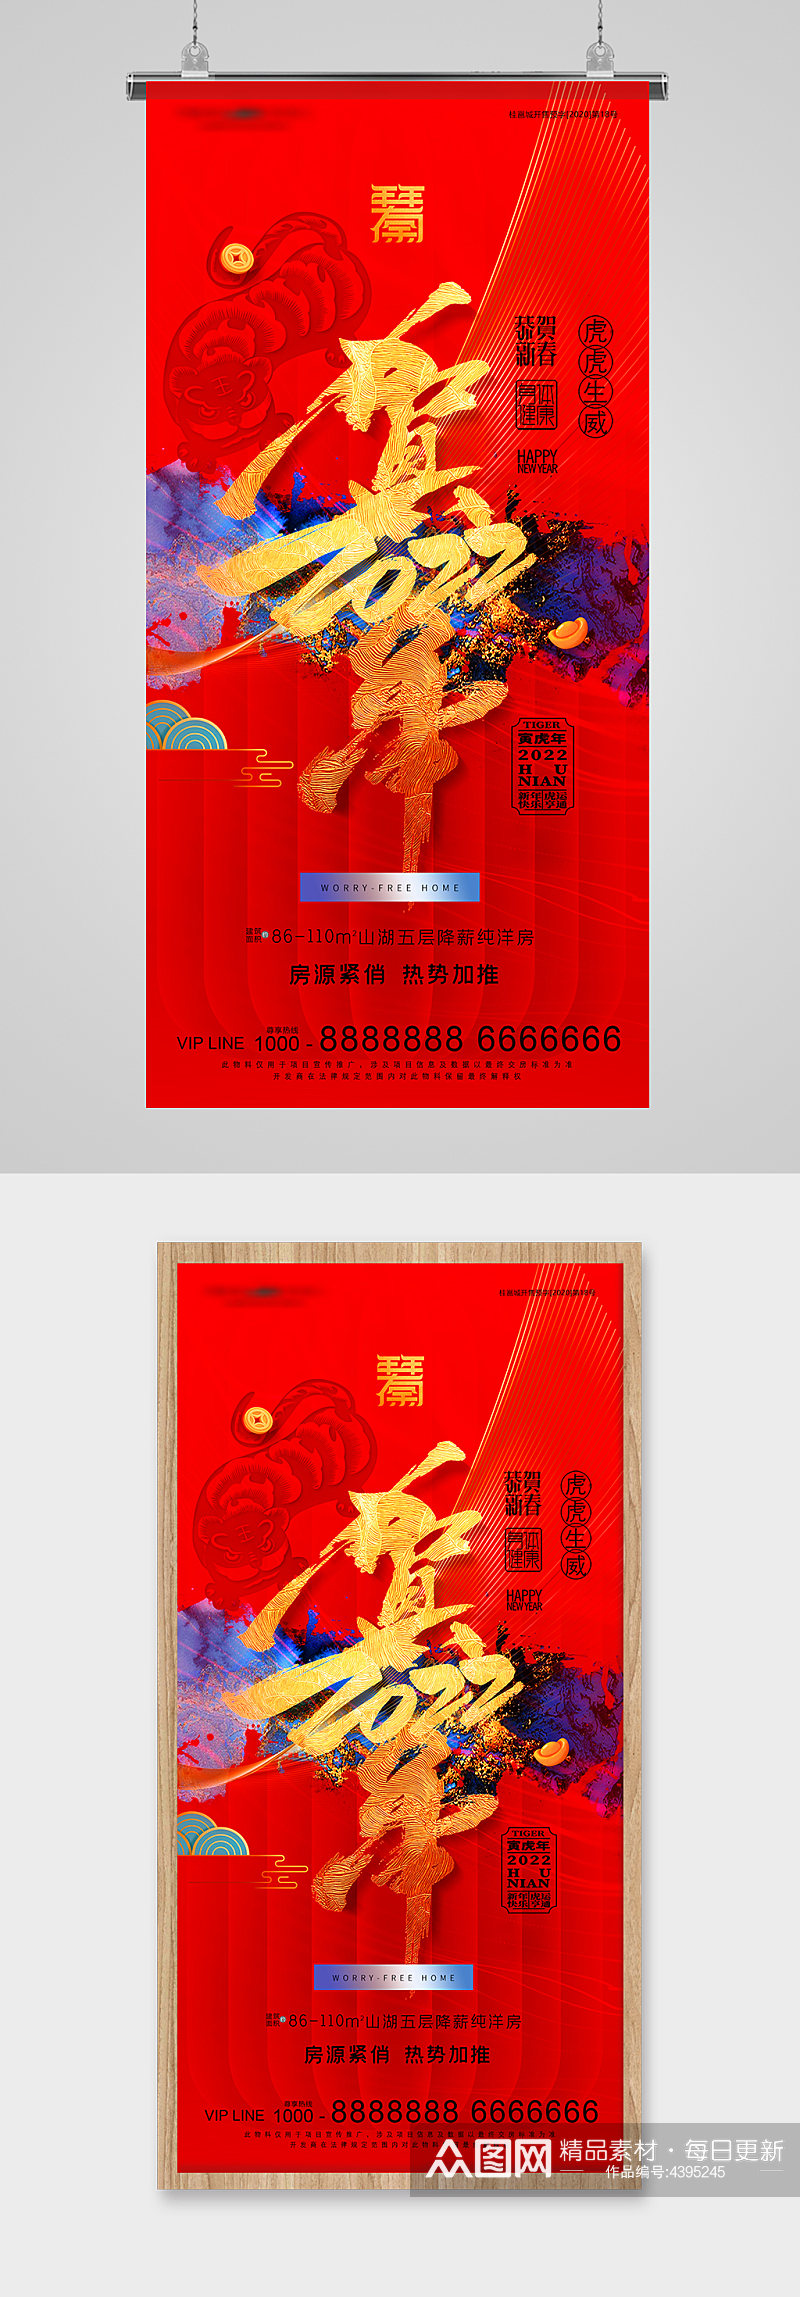 贺新年金红字体地产海报素材